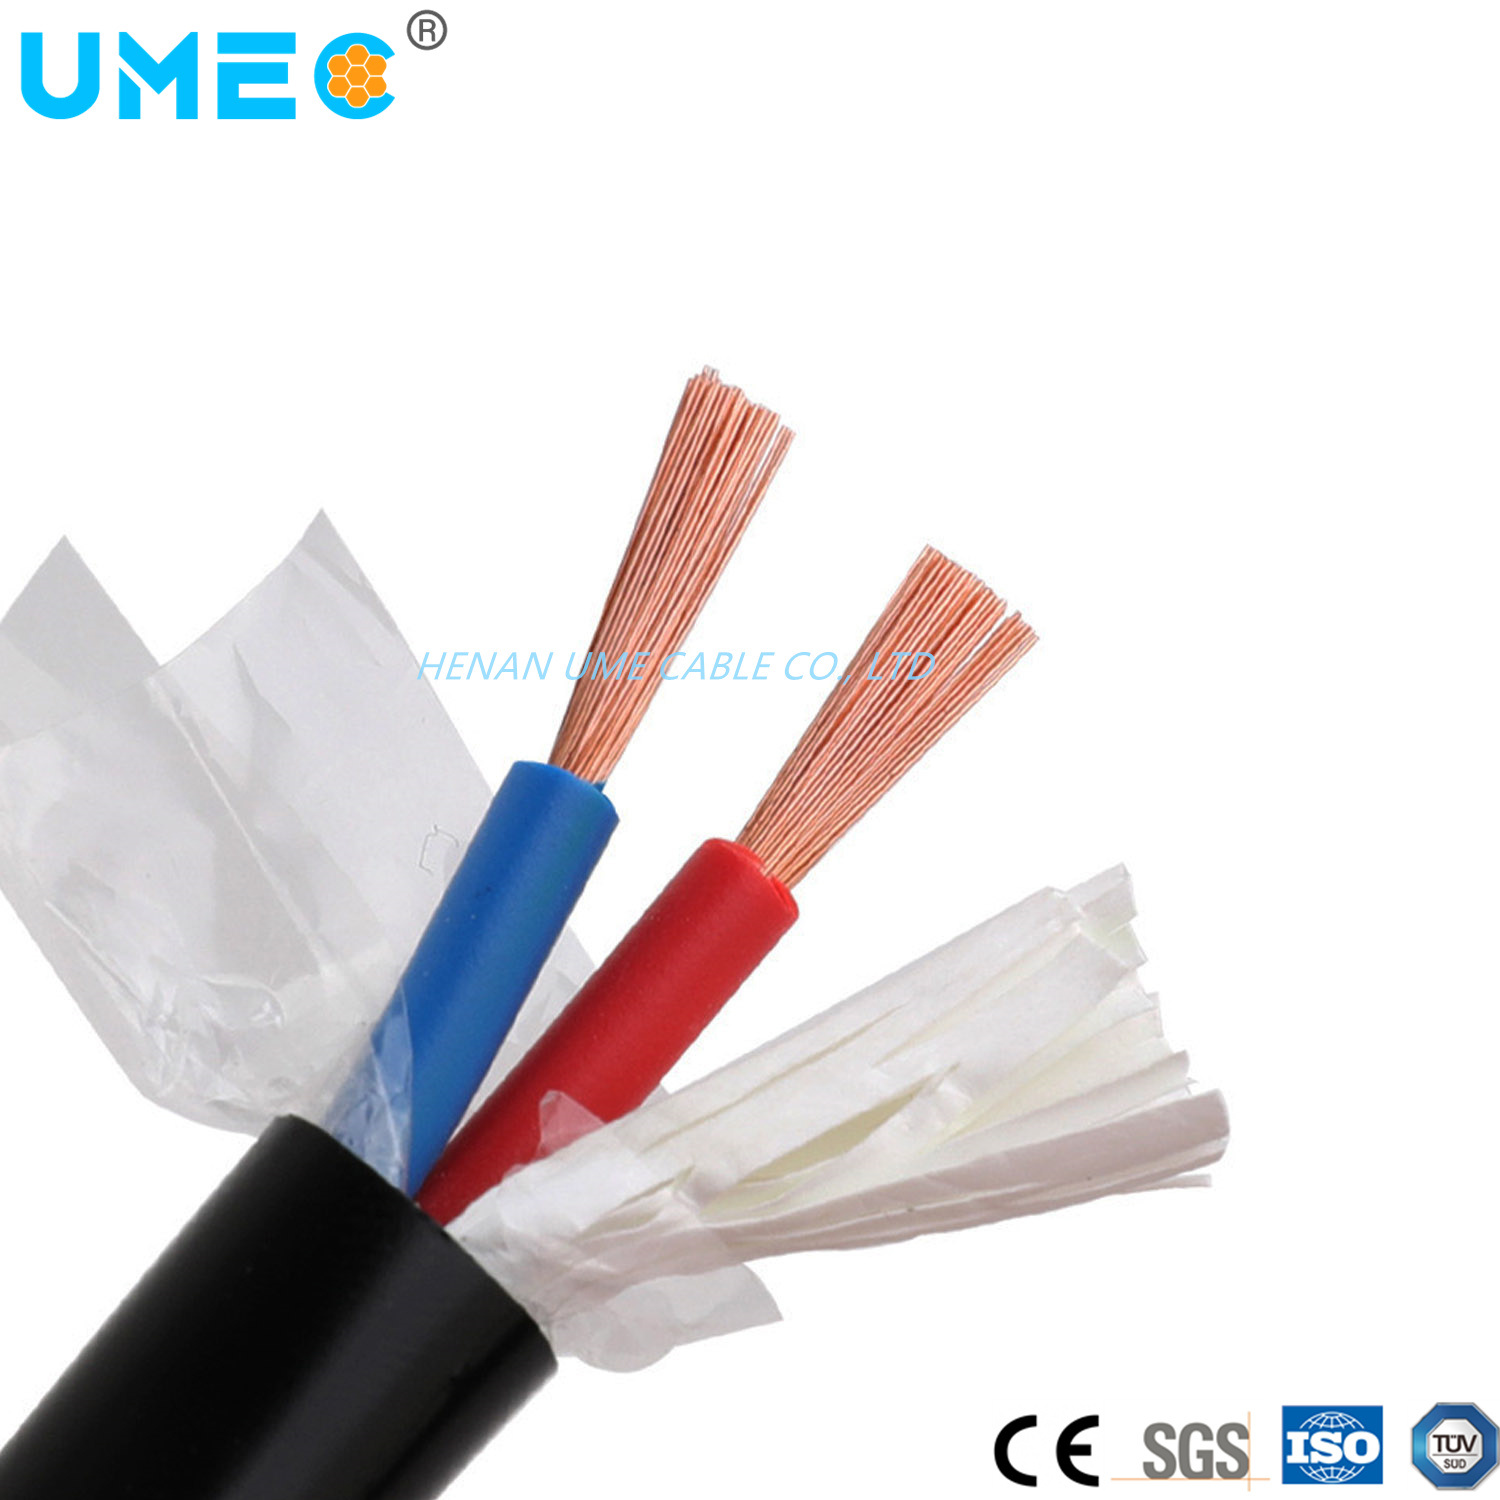 
                Proveedor eléctrico Cable Flexible núcleo de cobre aislados con PVC, recubierto de cable Cable eléctrico cableado de la casa de 2,5 mm 1,5 mm 4mm 6mm Rvv Myym H05VV-F
            